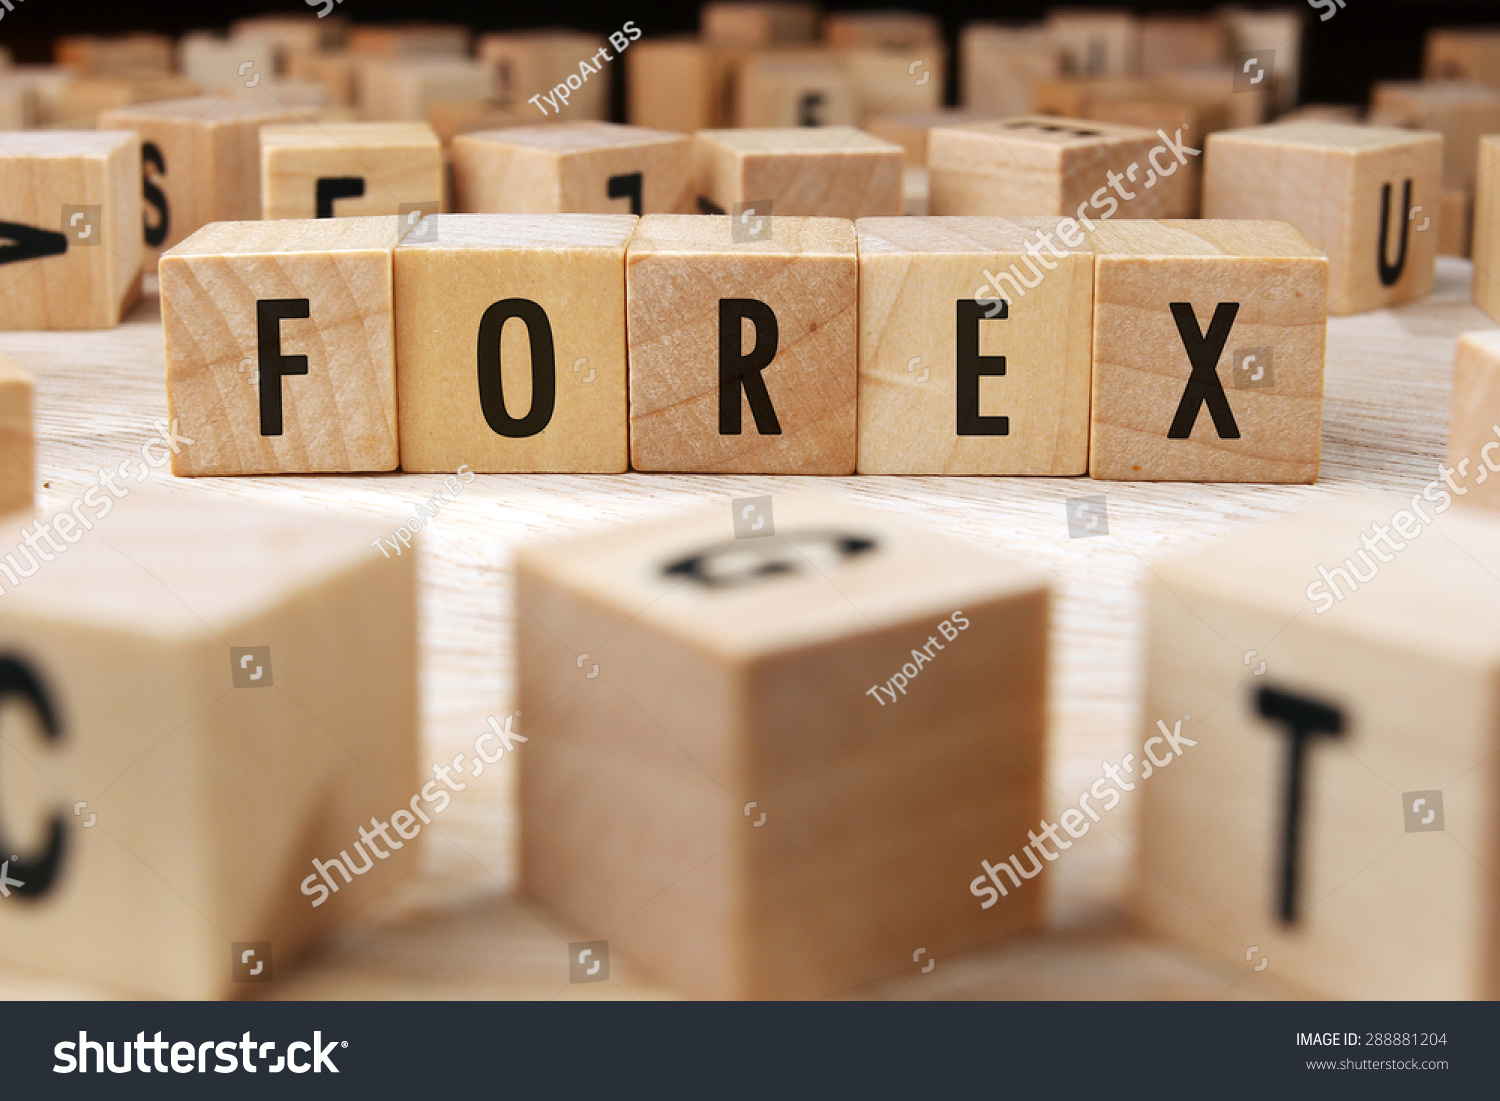 Forex lumber